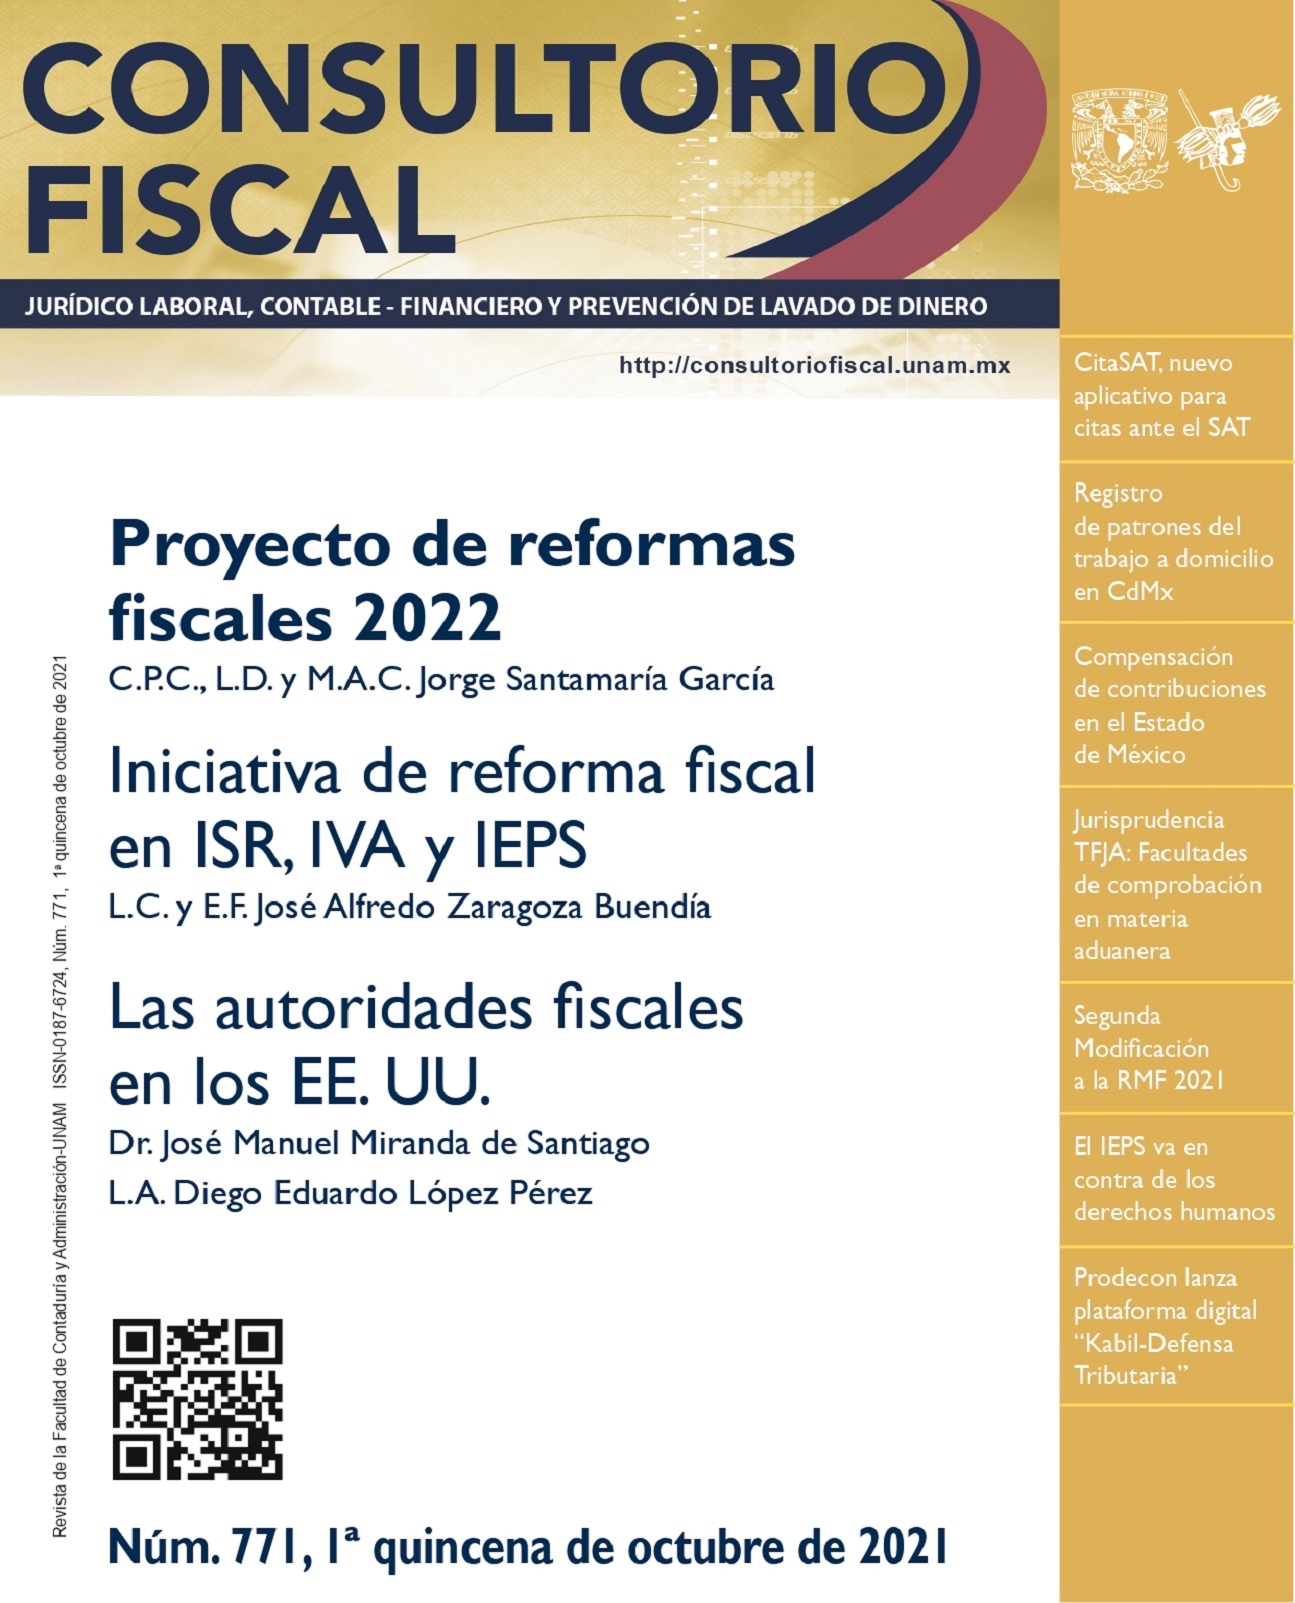 Proyectos de reformas fiscales 2022